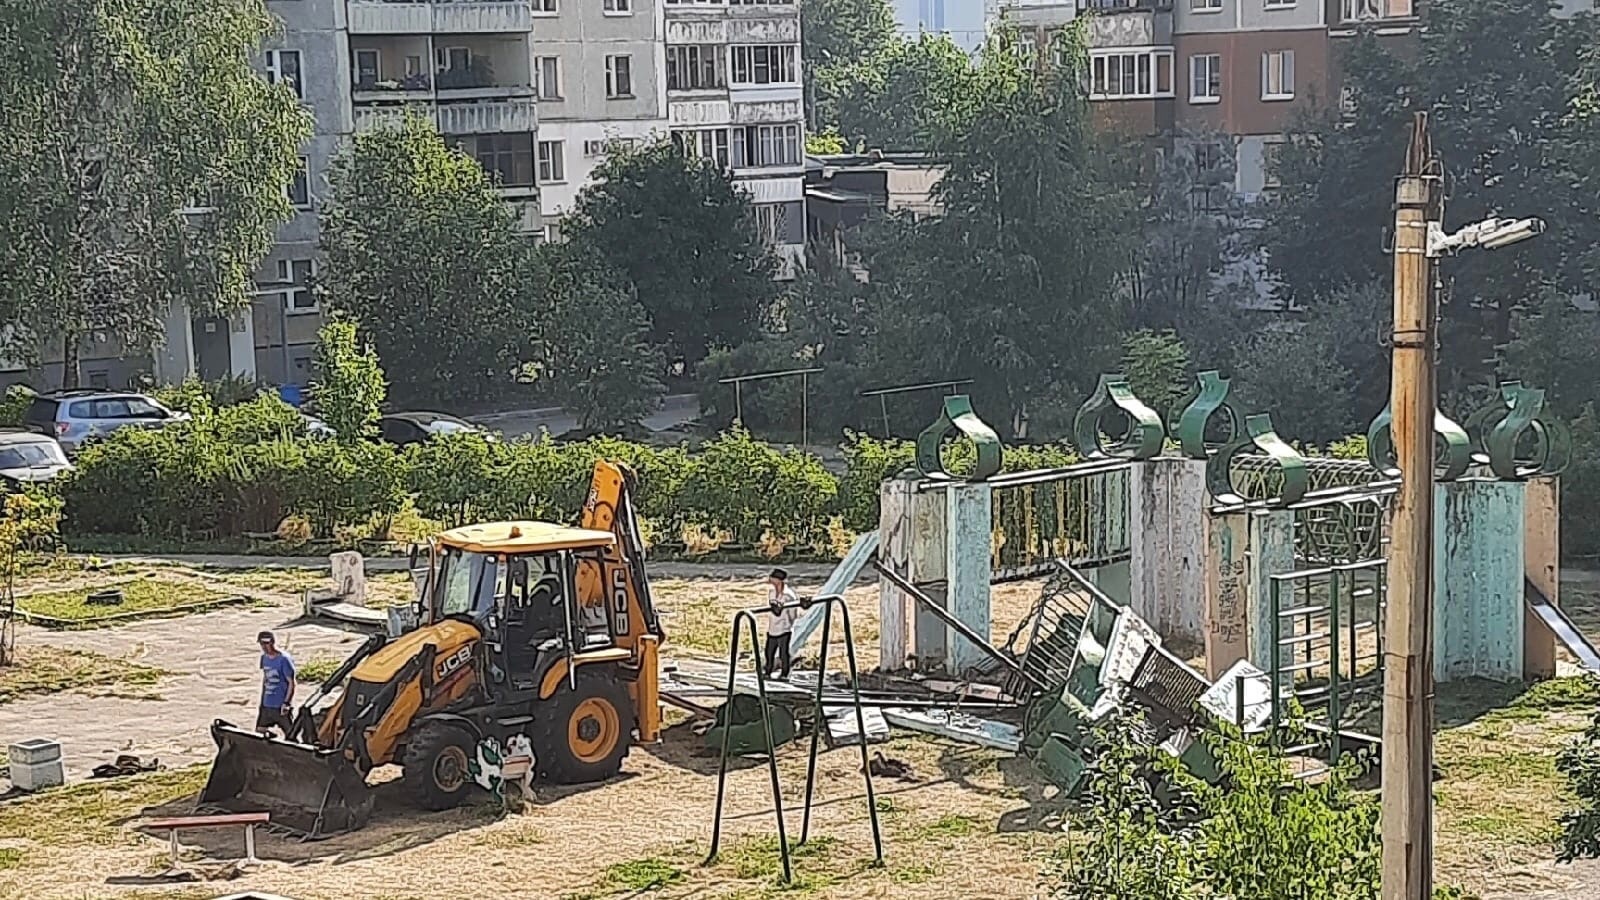 "Сносят остатки детства": в Ярославле разрушили легендарную детскую площадку